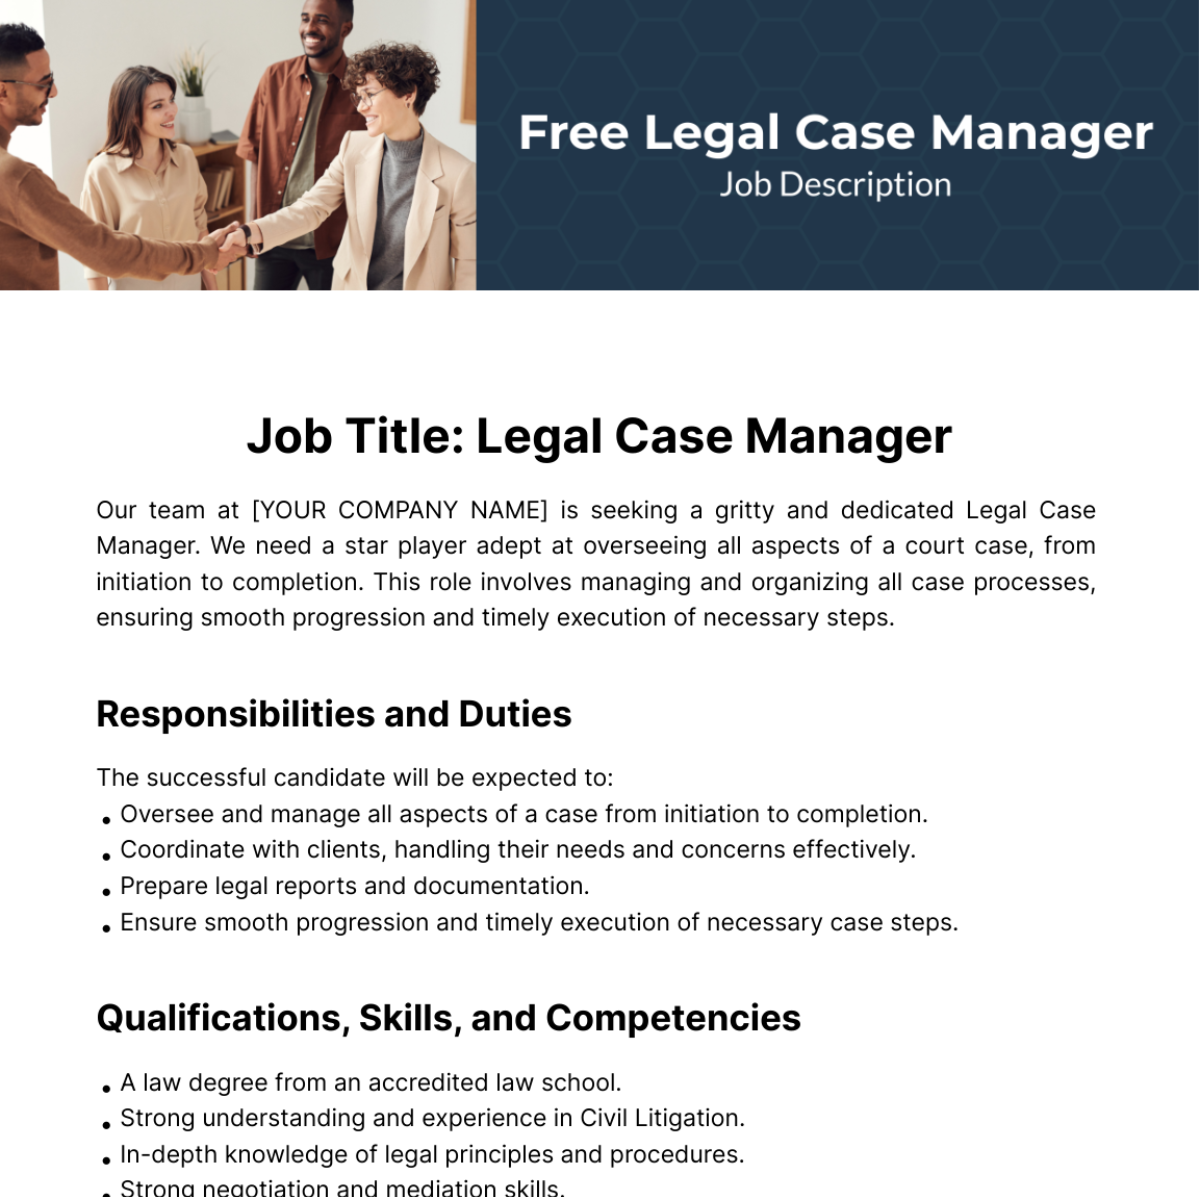 Legal Case Manager Job Description Template